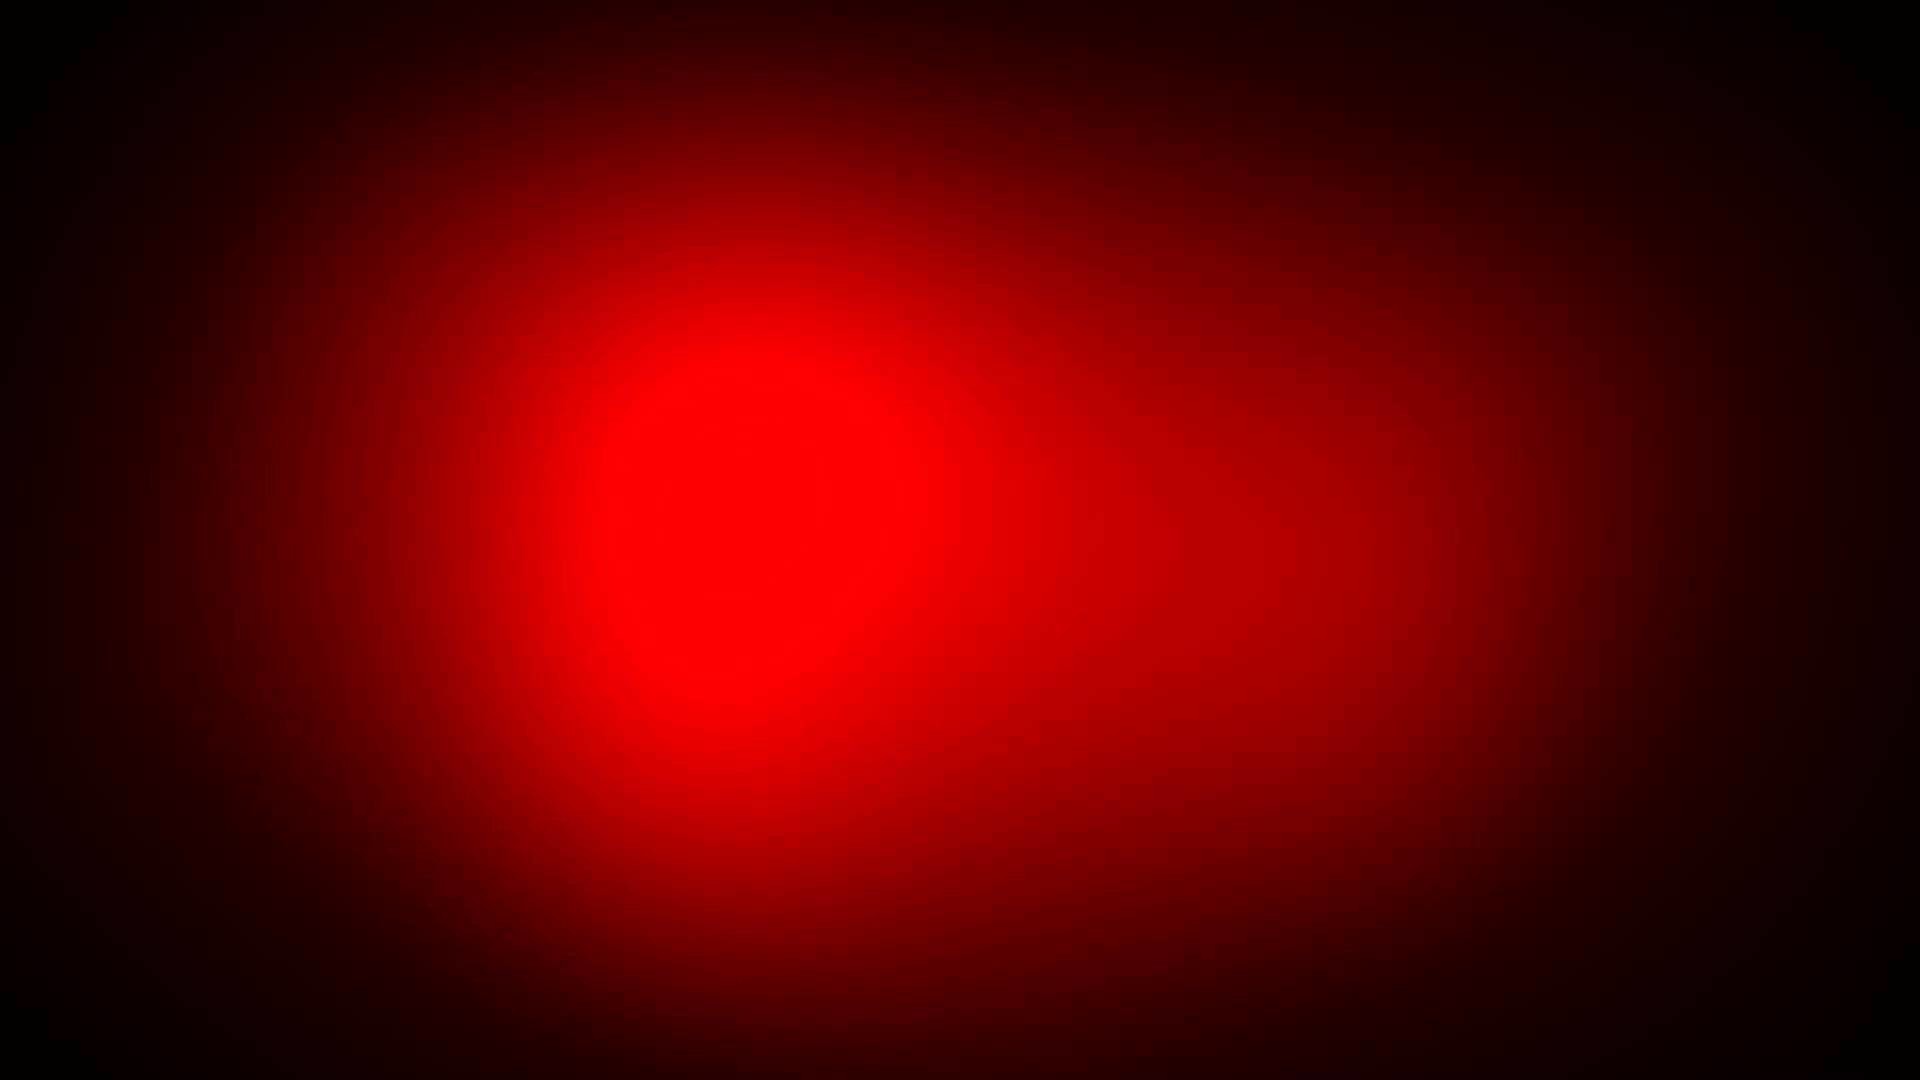 sfondo rosso hd 1080p,rosso,nero,leggero,cielo,arancia